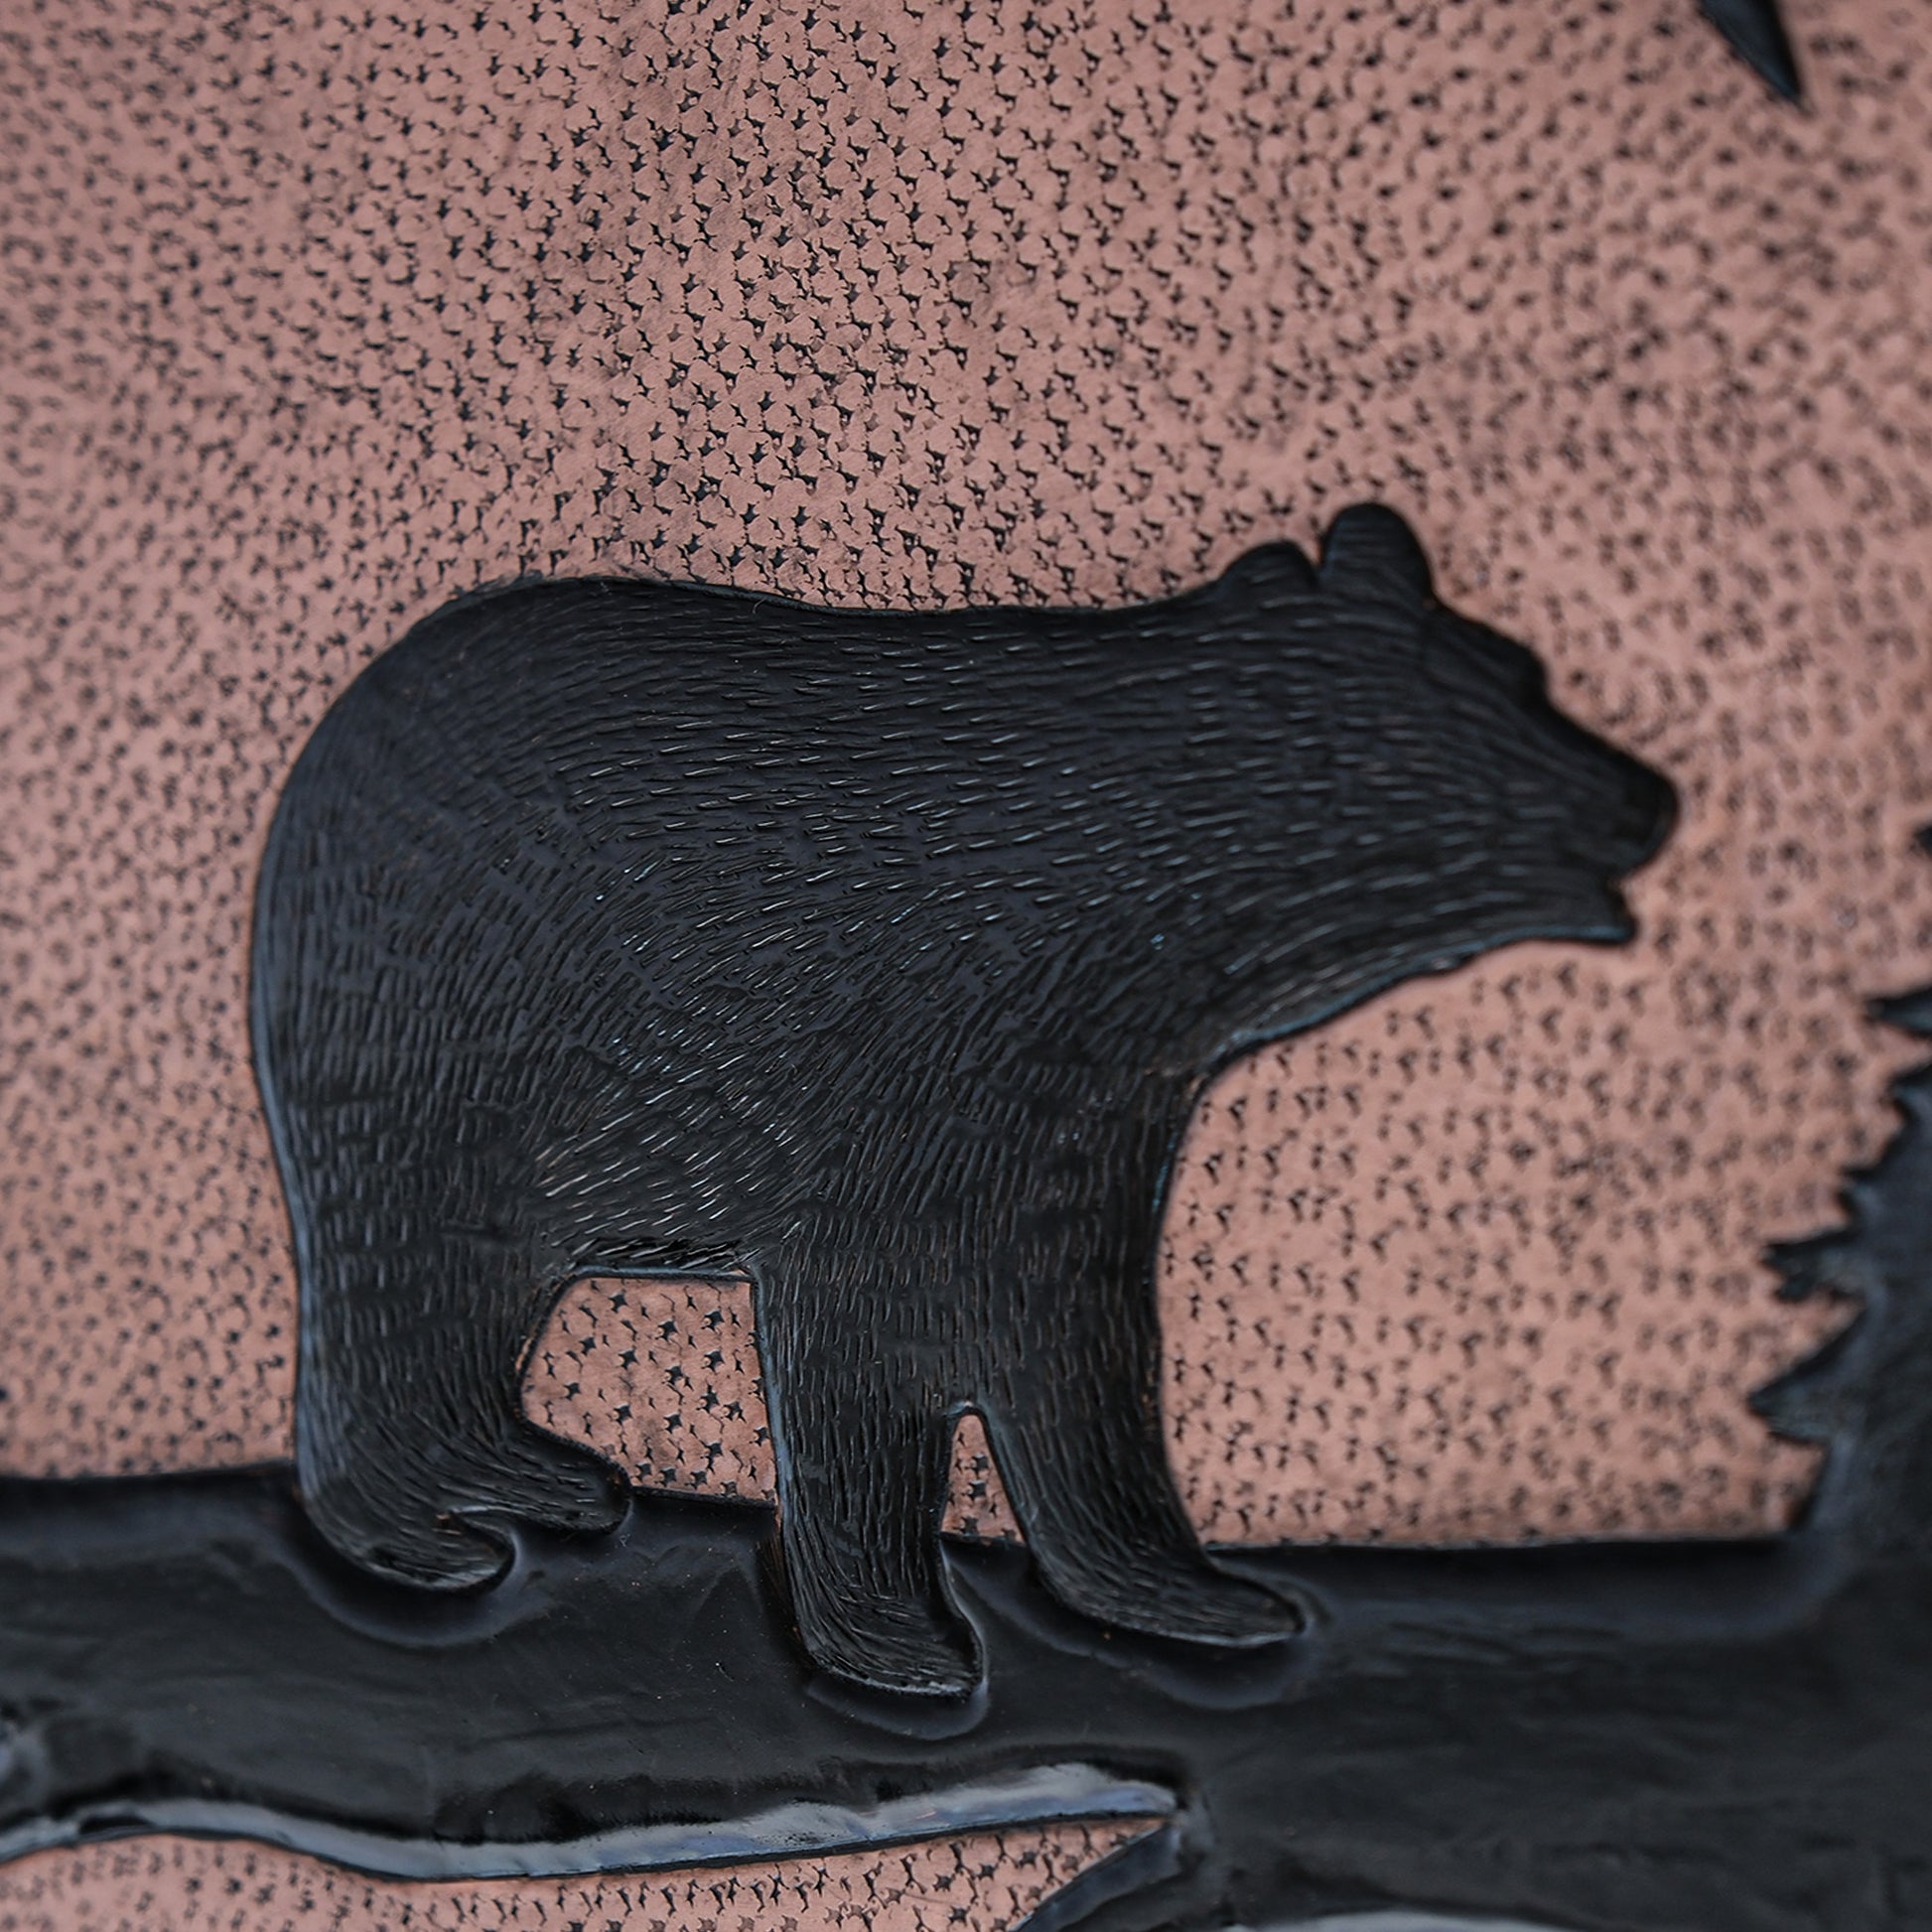 Copper Backsplash( Bear Scene, Copper&Black Color)